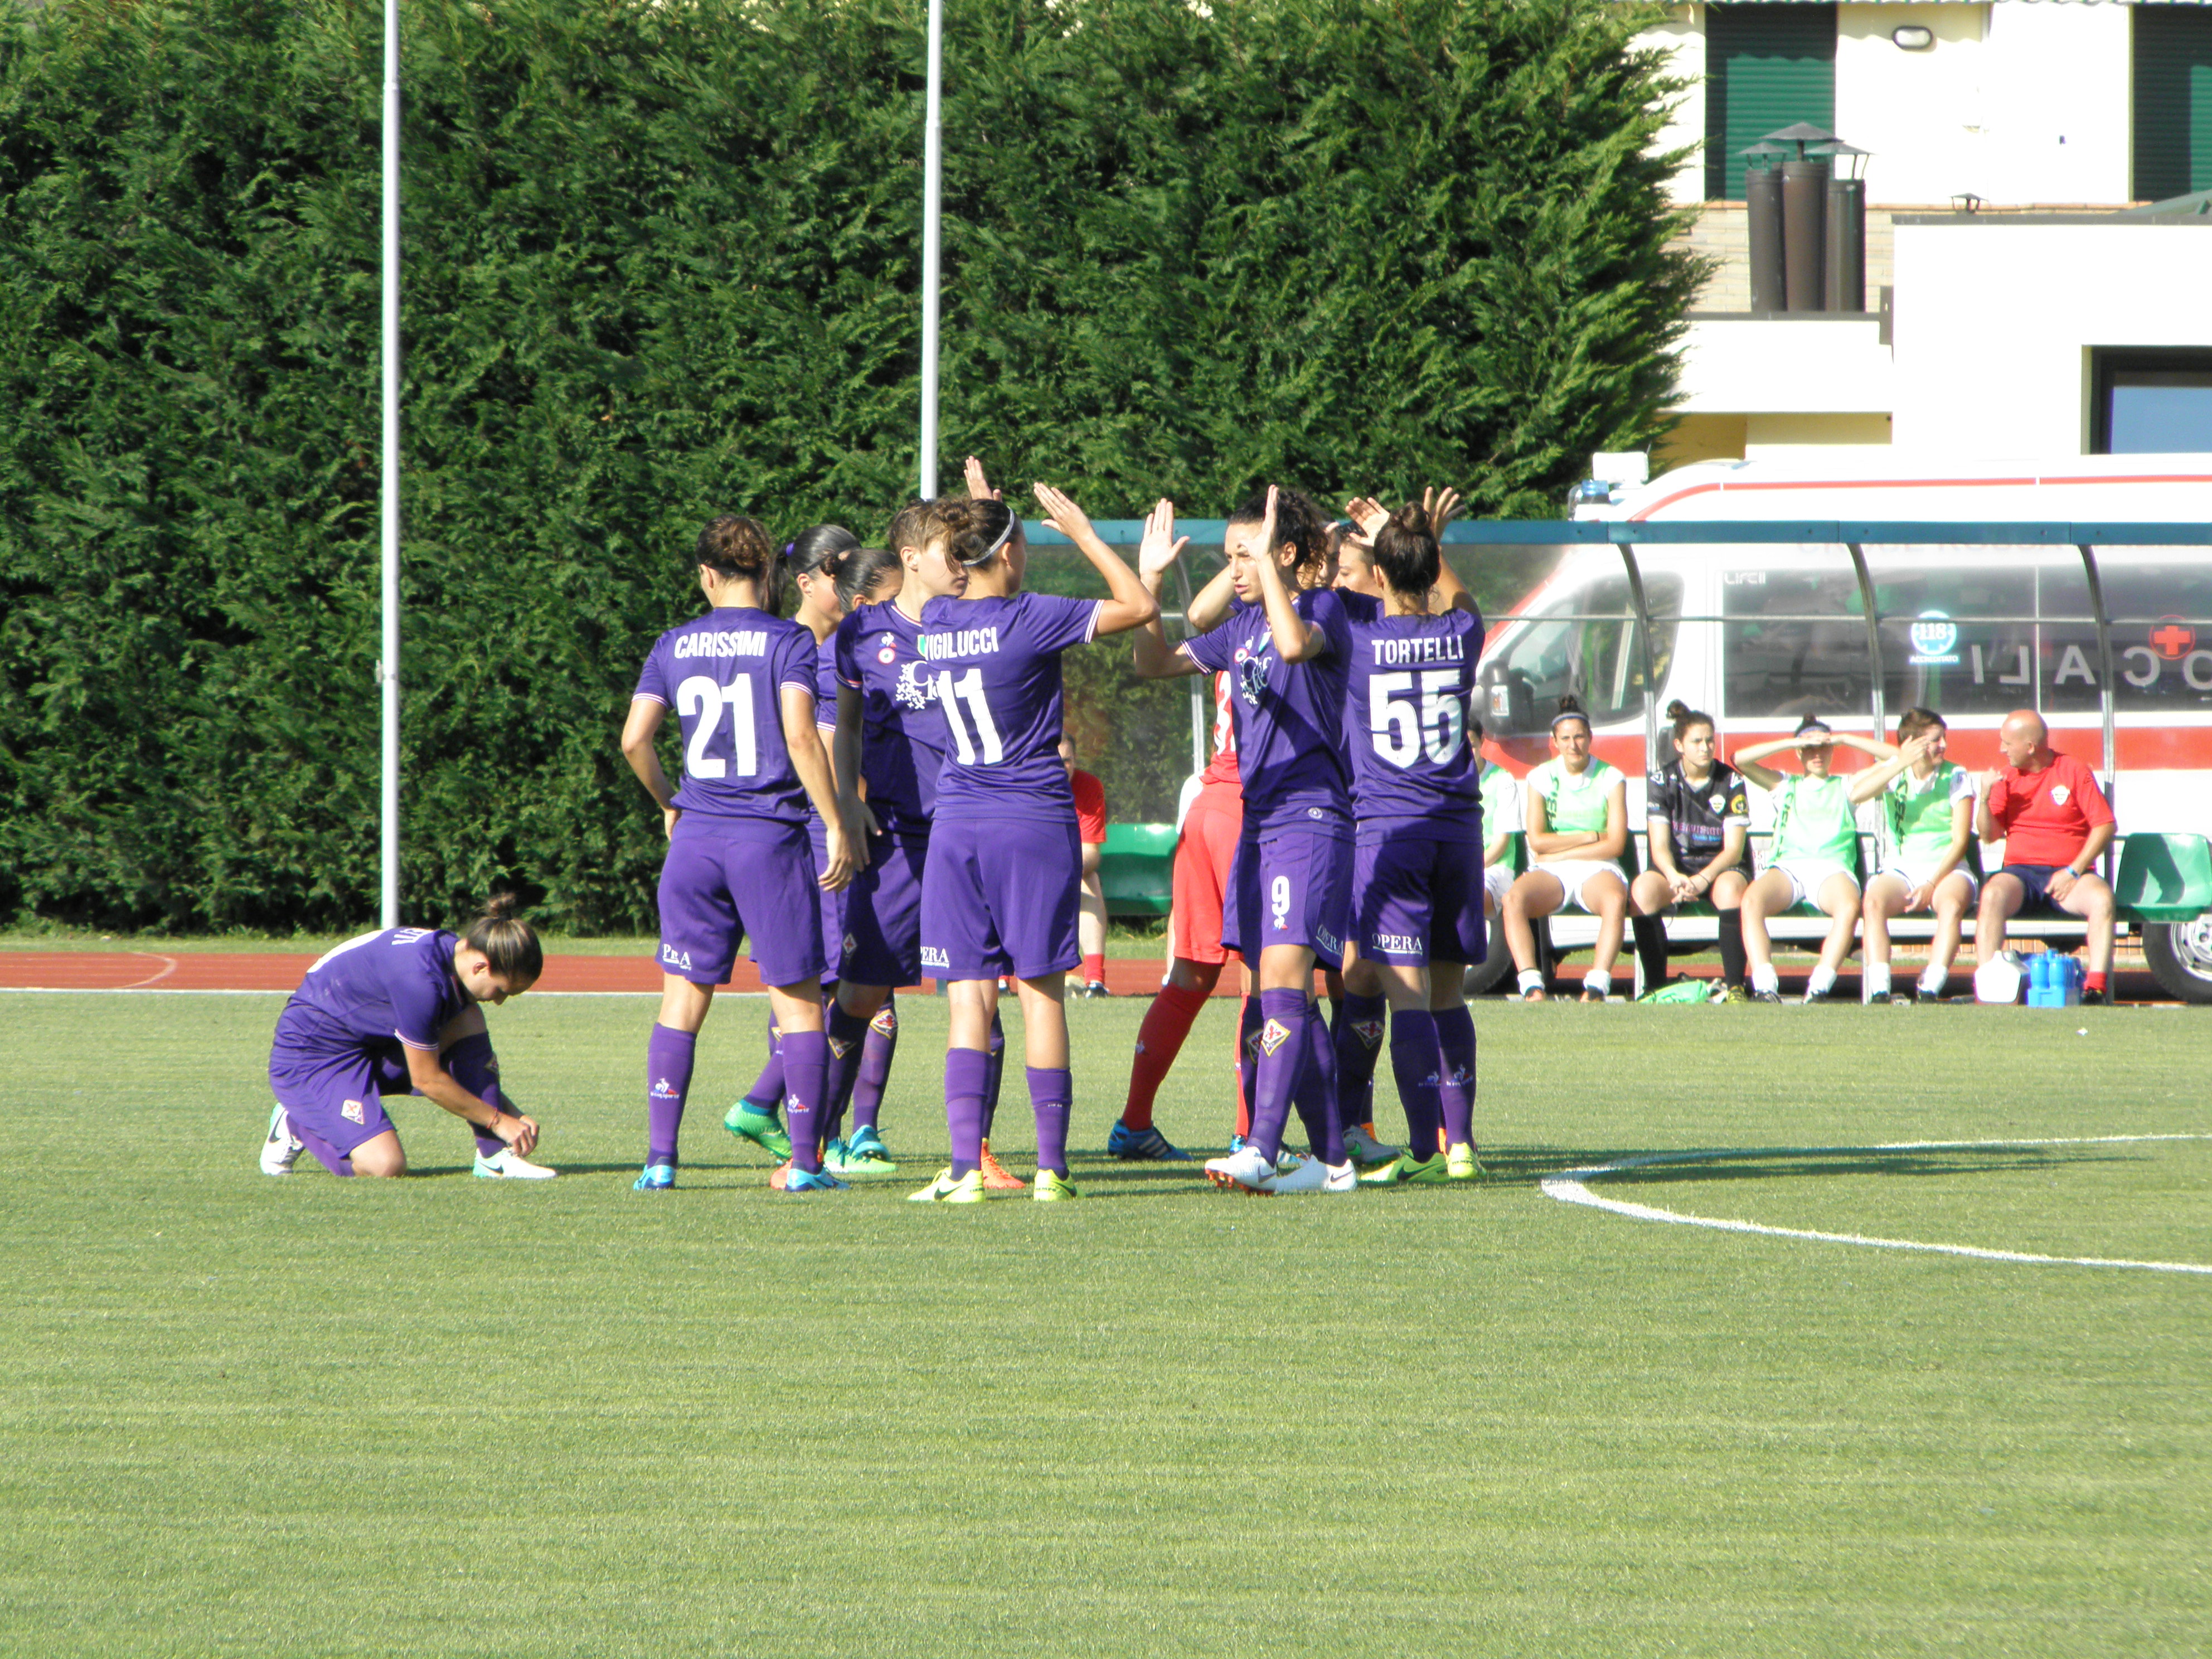 File:Presentazioni squadre Fiorentina Women's FC vs UPC Tavagnacco 2018-06-16 06.jpg - Wikimedia Commons